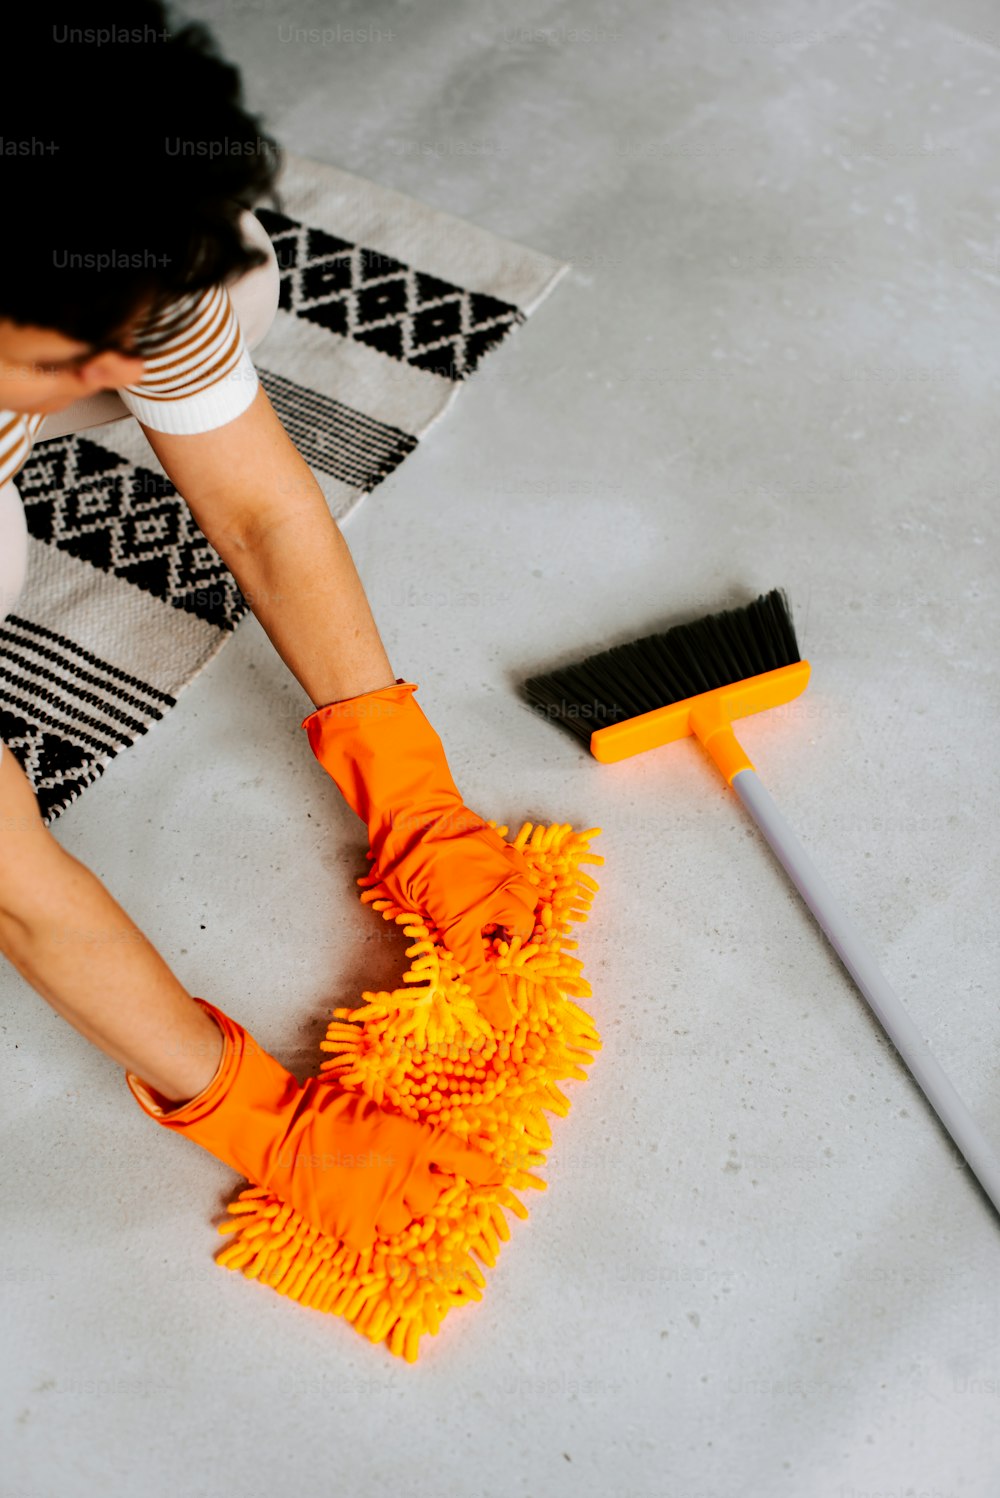 Una mujer está limpiando el piso con una escoba